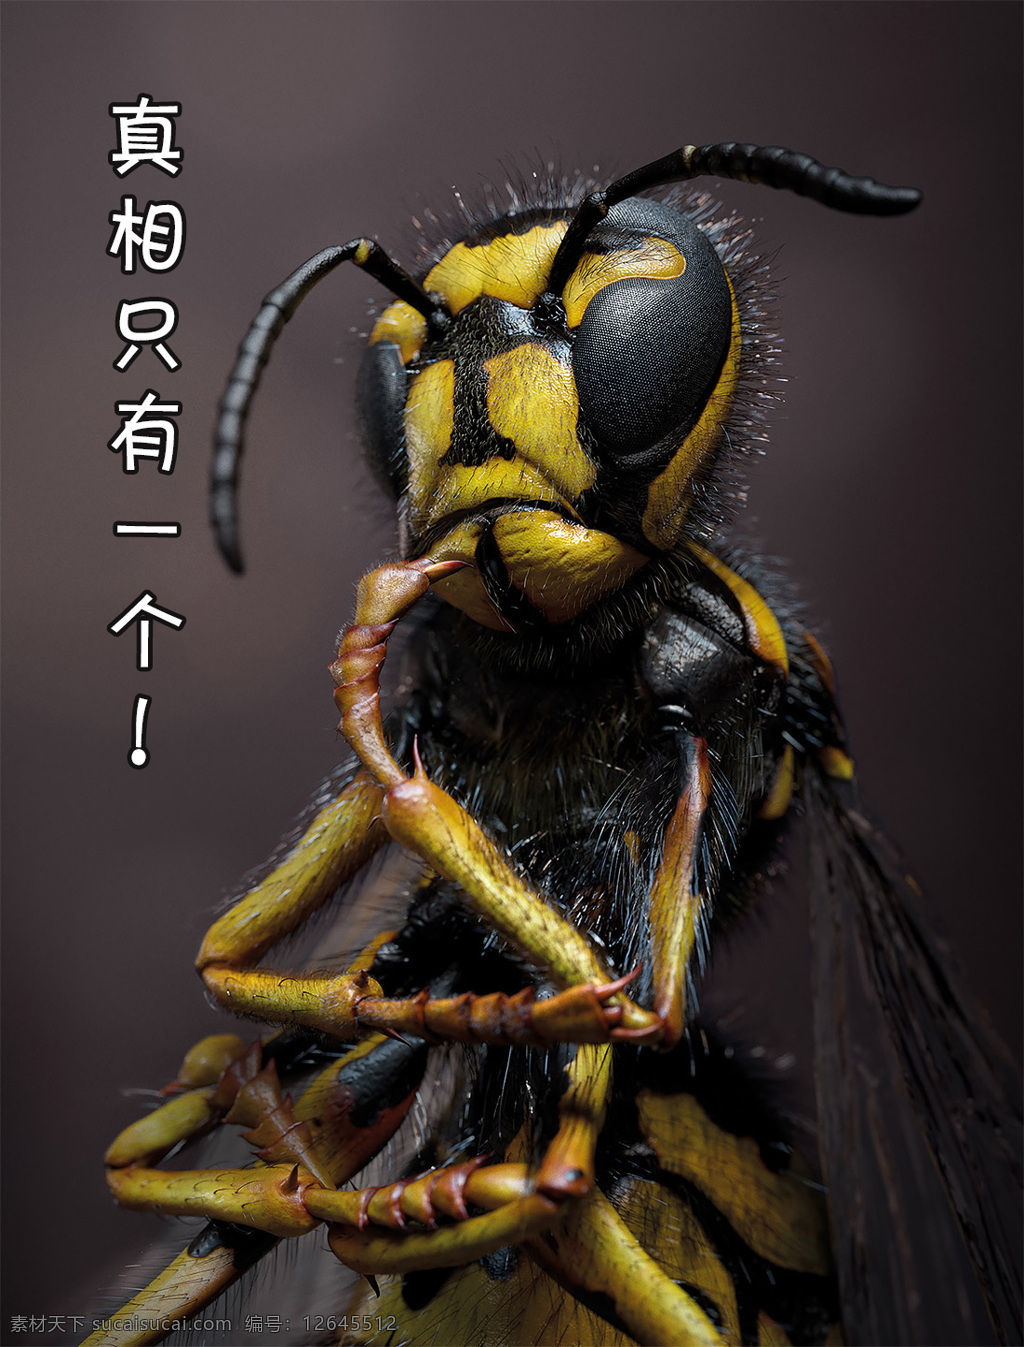 昆虫搞笑系列 昆虫 真相 一个 黄色 作品 素材文件